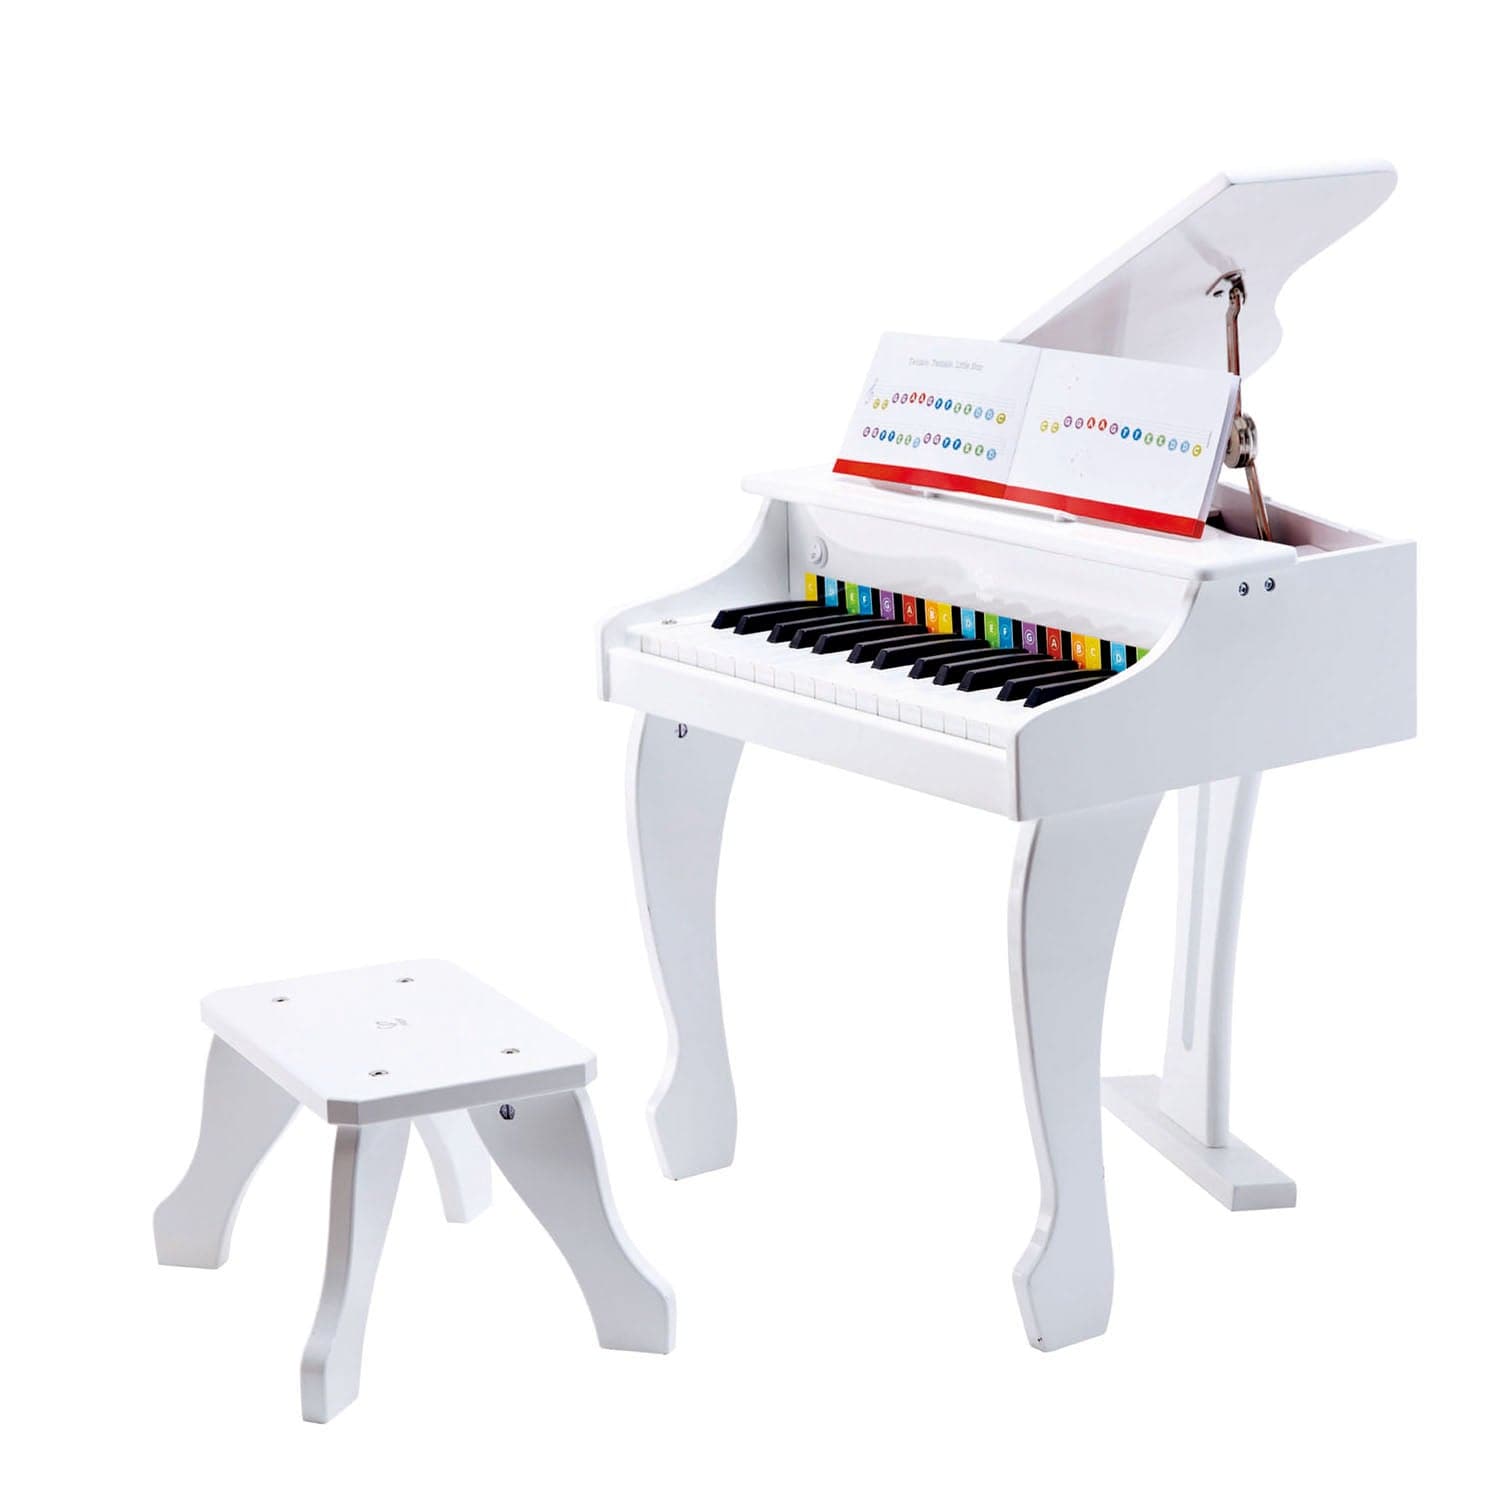 Hape-Deluxe Grand Piano - White-E0338-Legacy Toys